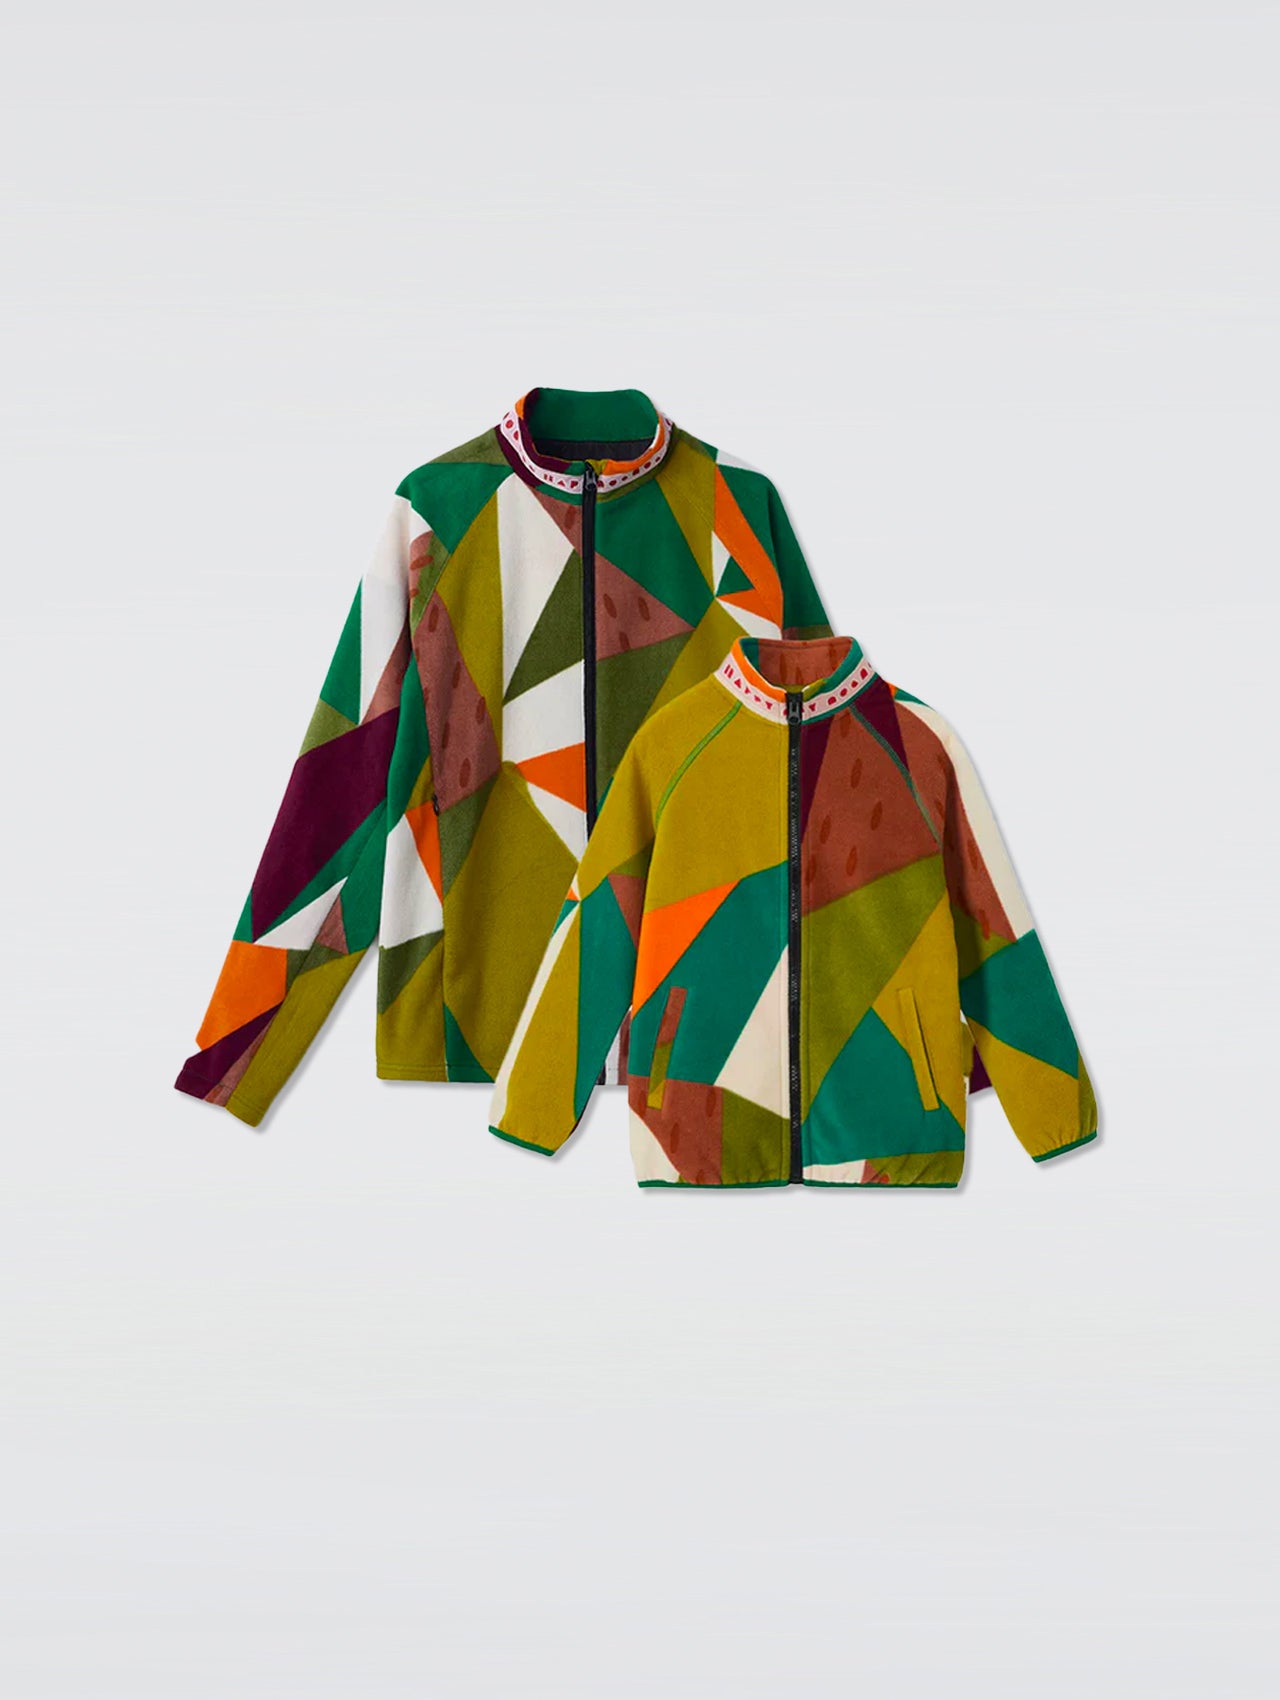 Camo Geometric Print Fleece Jacket